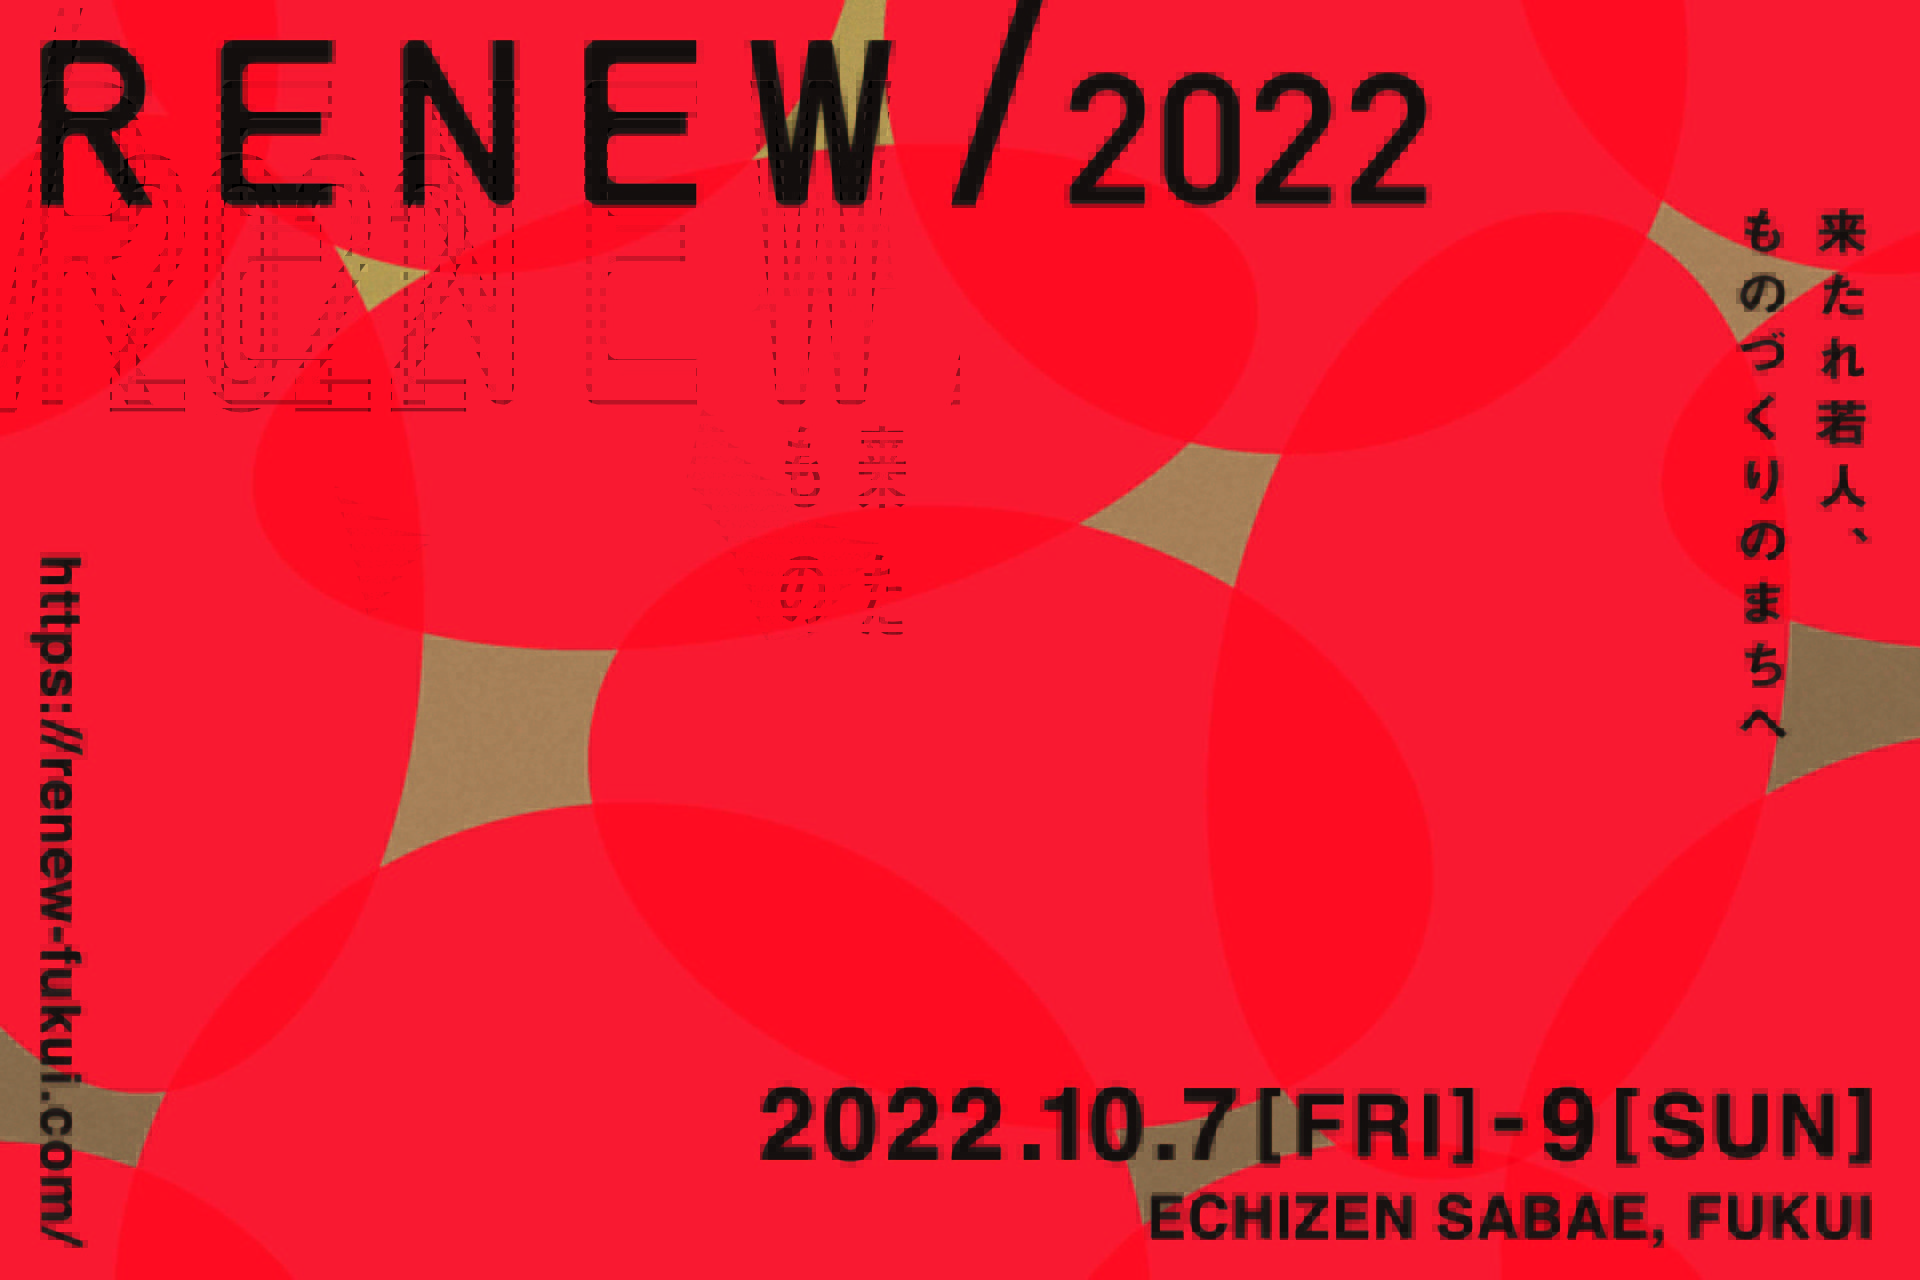 RENEW/2022